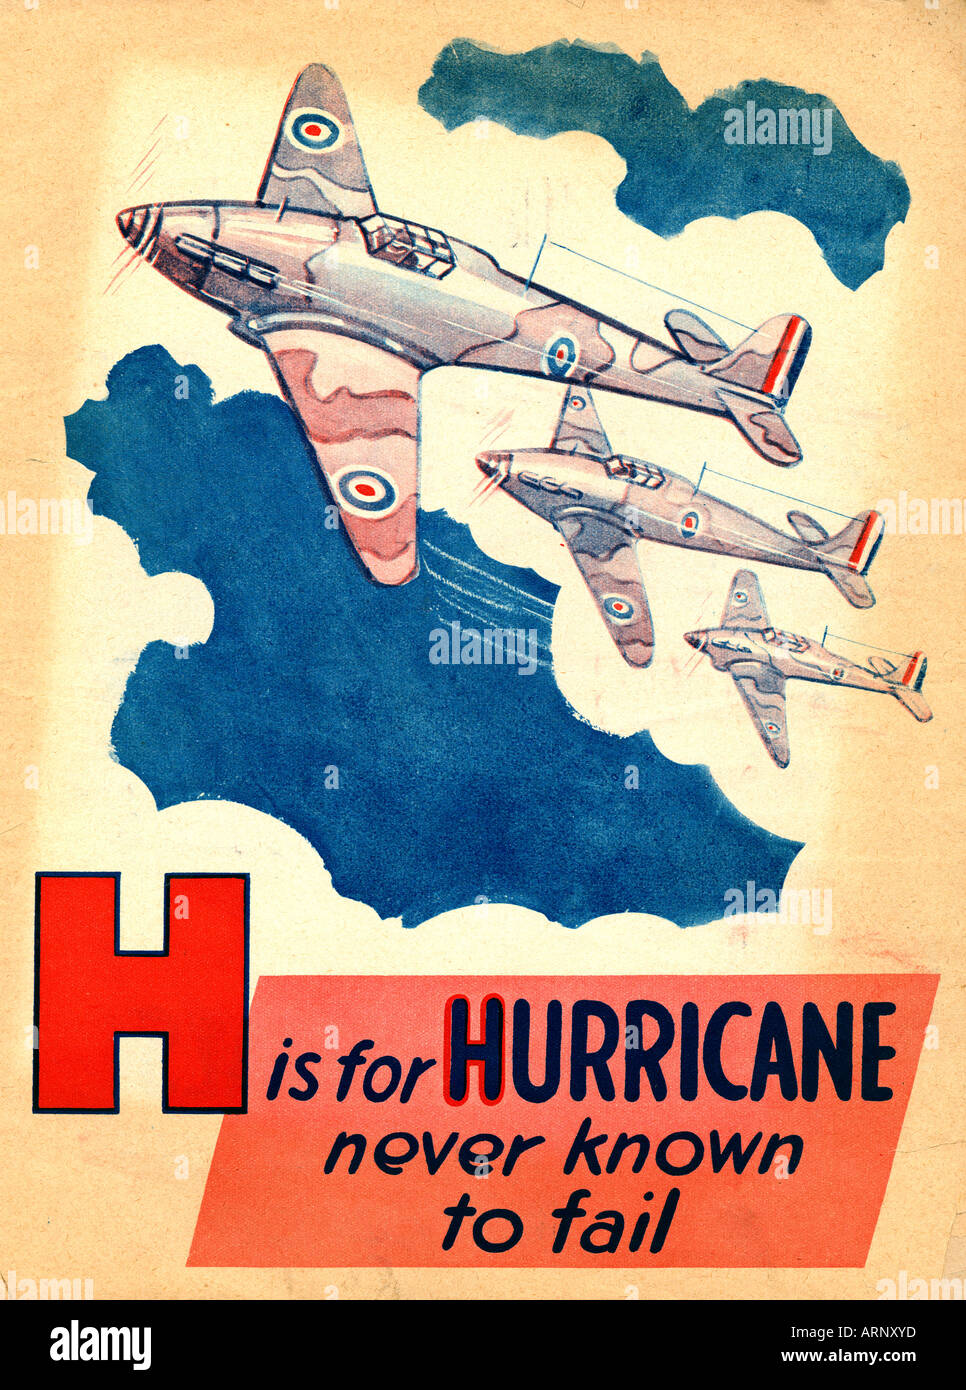 Schlacht von Großbritannien H ist für Hurrikan nie britischen Alphabet Kinderbuch von WW II von der ikonischen Kämpfer nicht bekannt Stockfoto